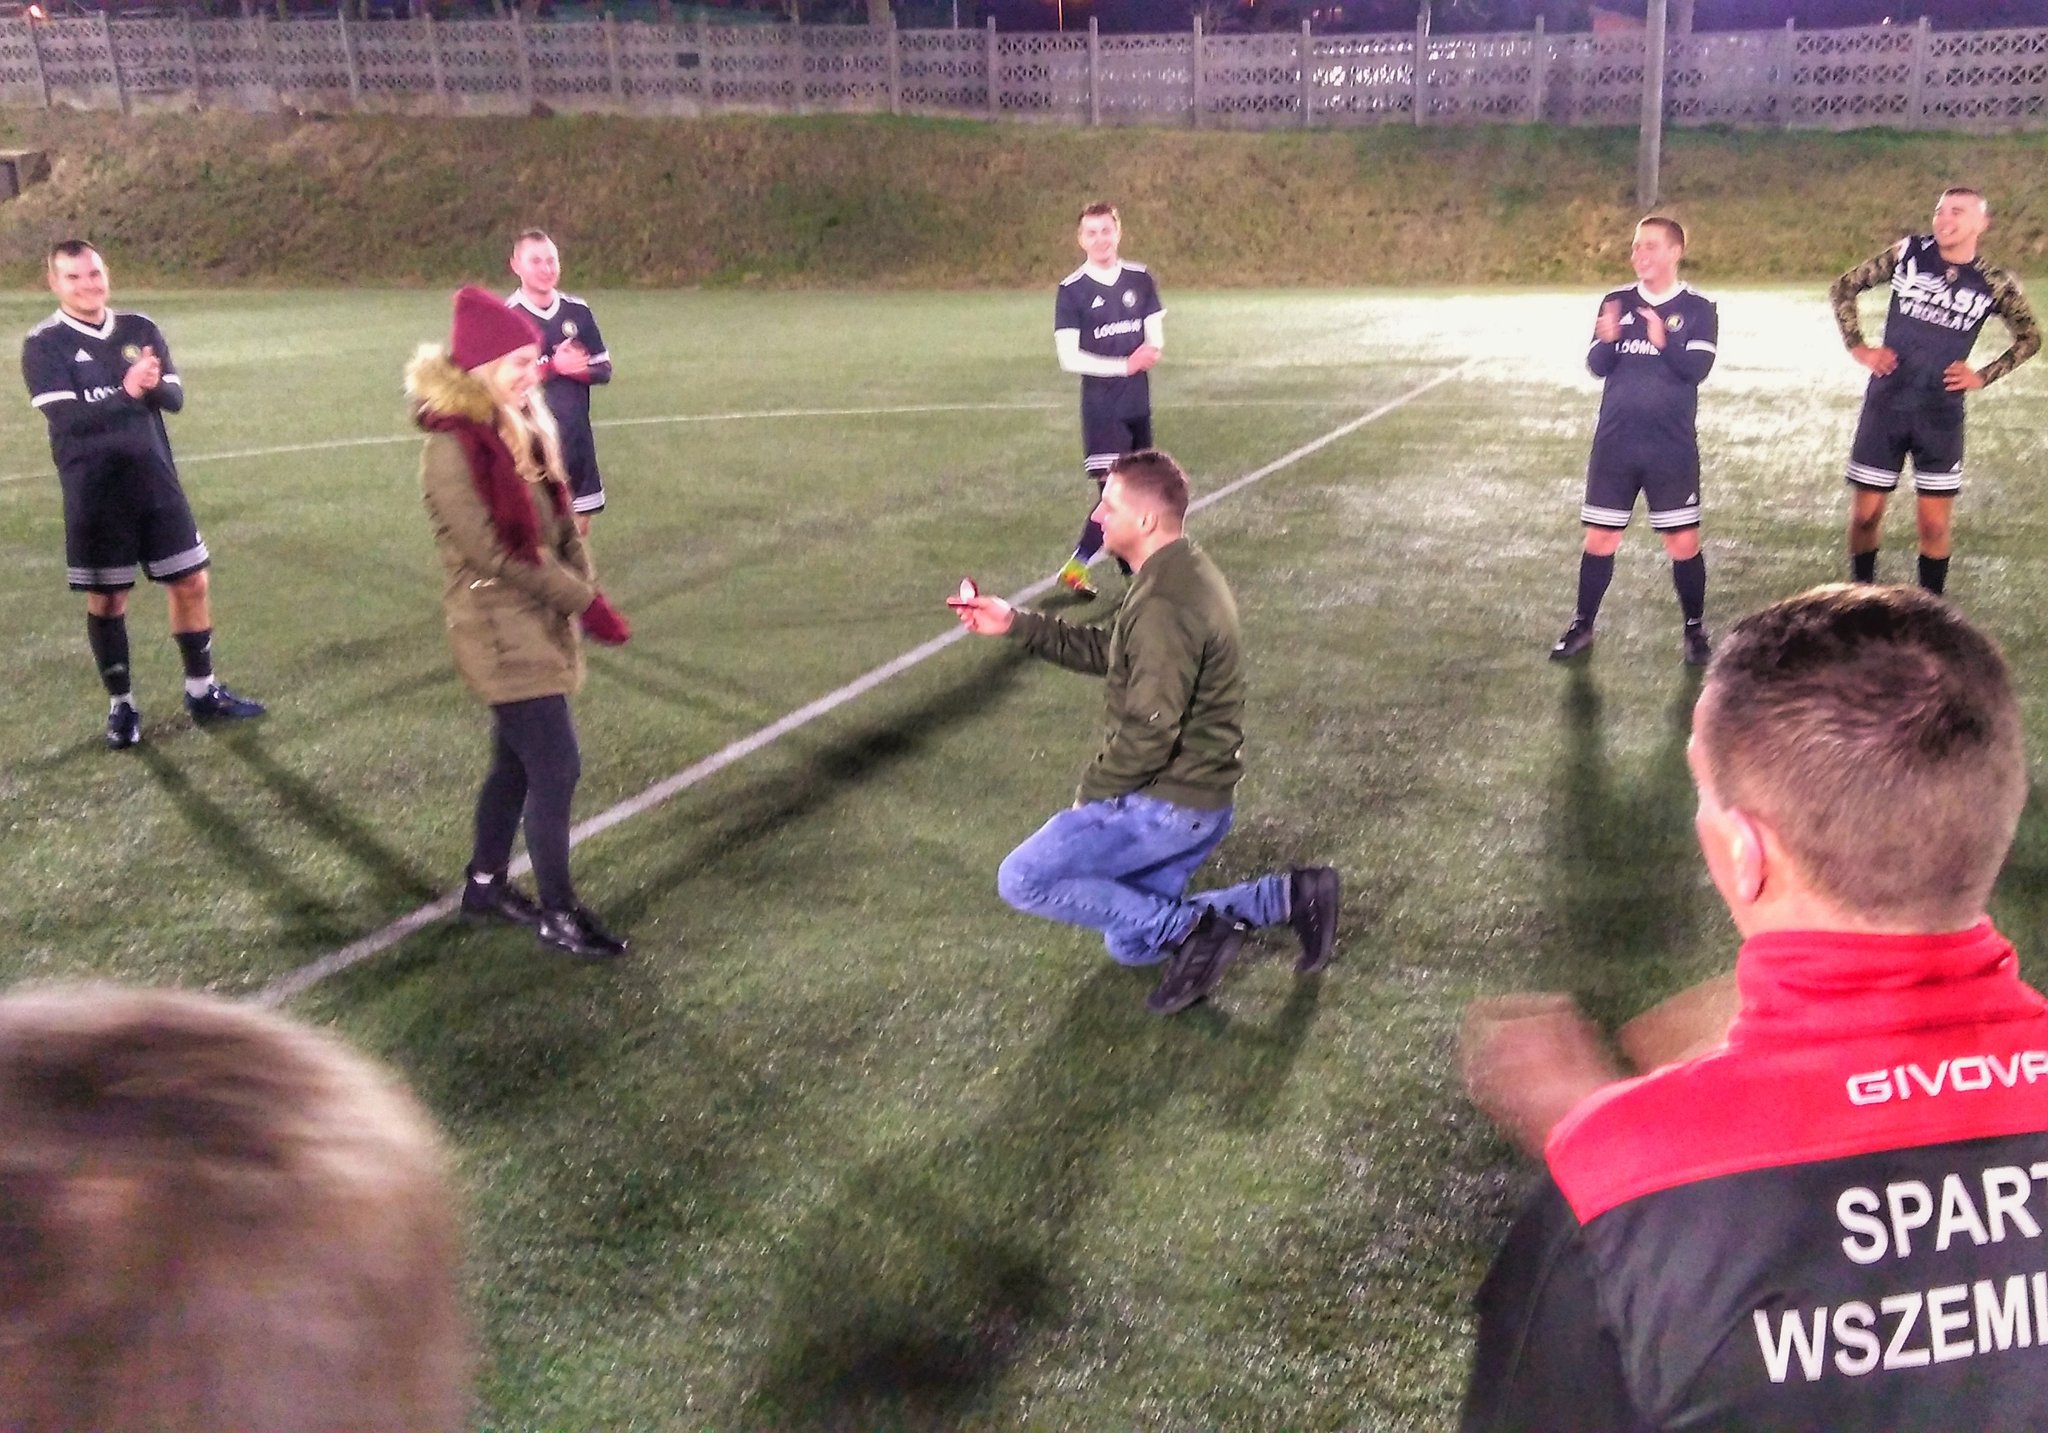 B-klasa Wrocław II. Były zawodnik Sparty Wszemirów oświadczył się swojej partnerce…na środku boiska ( Wideo)